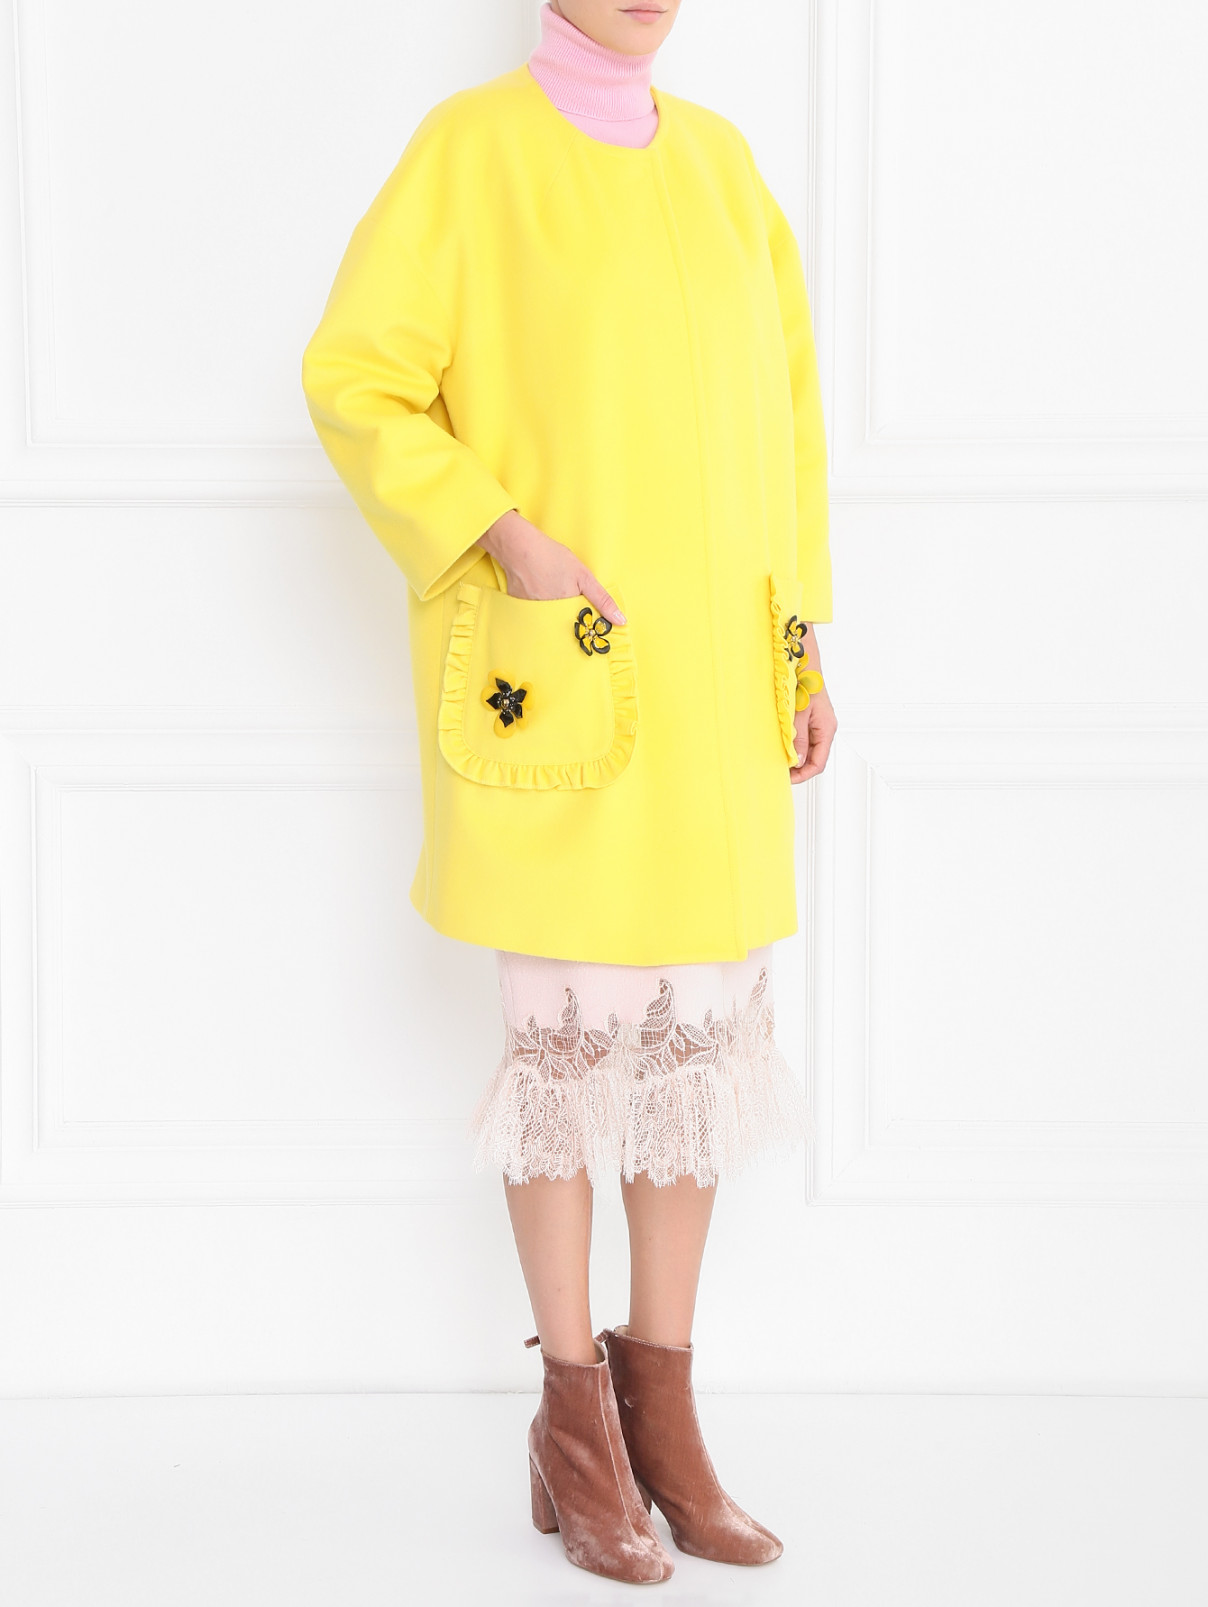 Однобортное пальто из шерсти с декоративными элементами I'M Isola Marras  –  Модель Общий вид  – Цвет:  Желтый